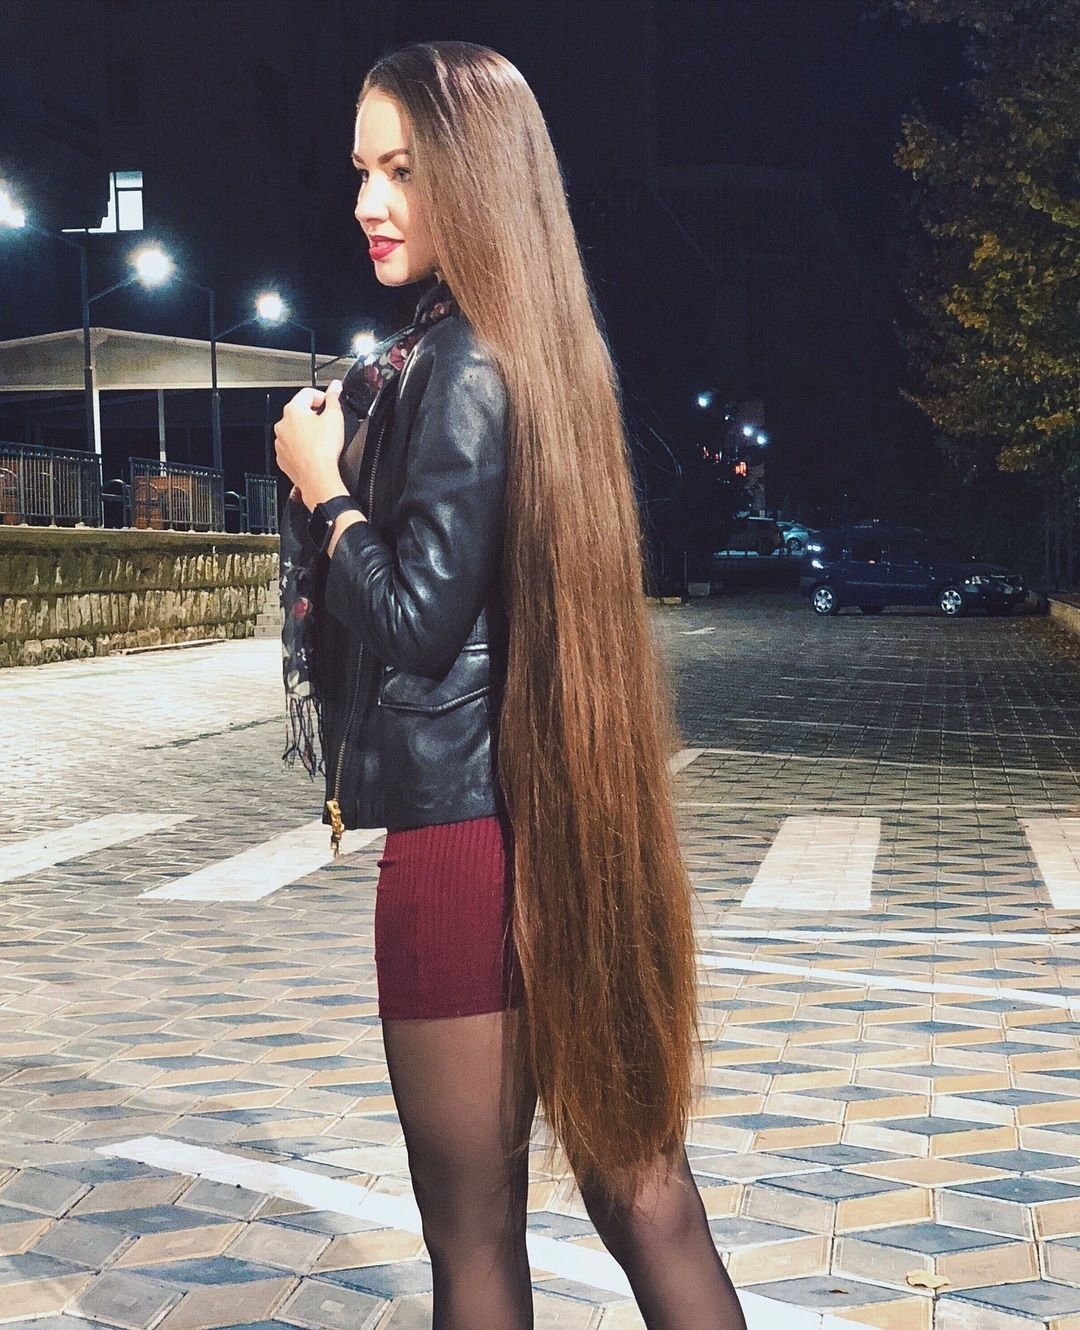 Девочка С Очень Длинными Волосами